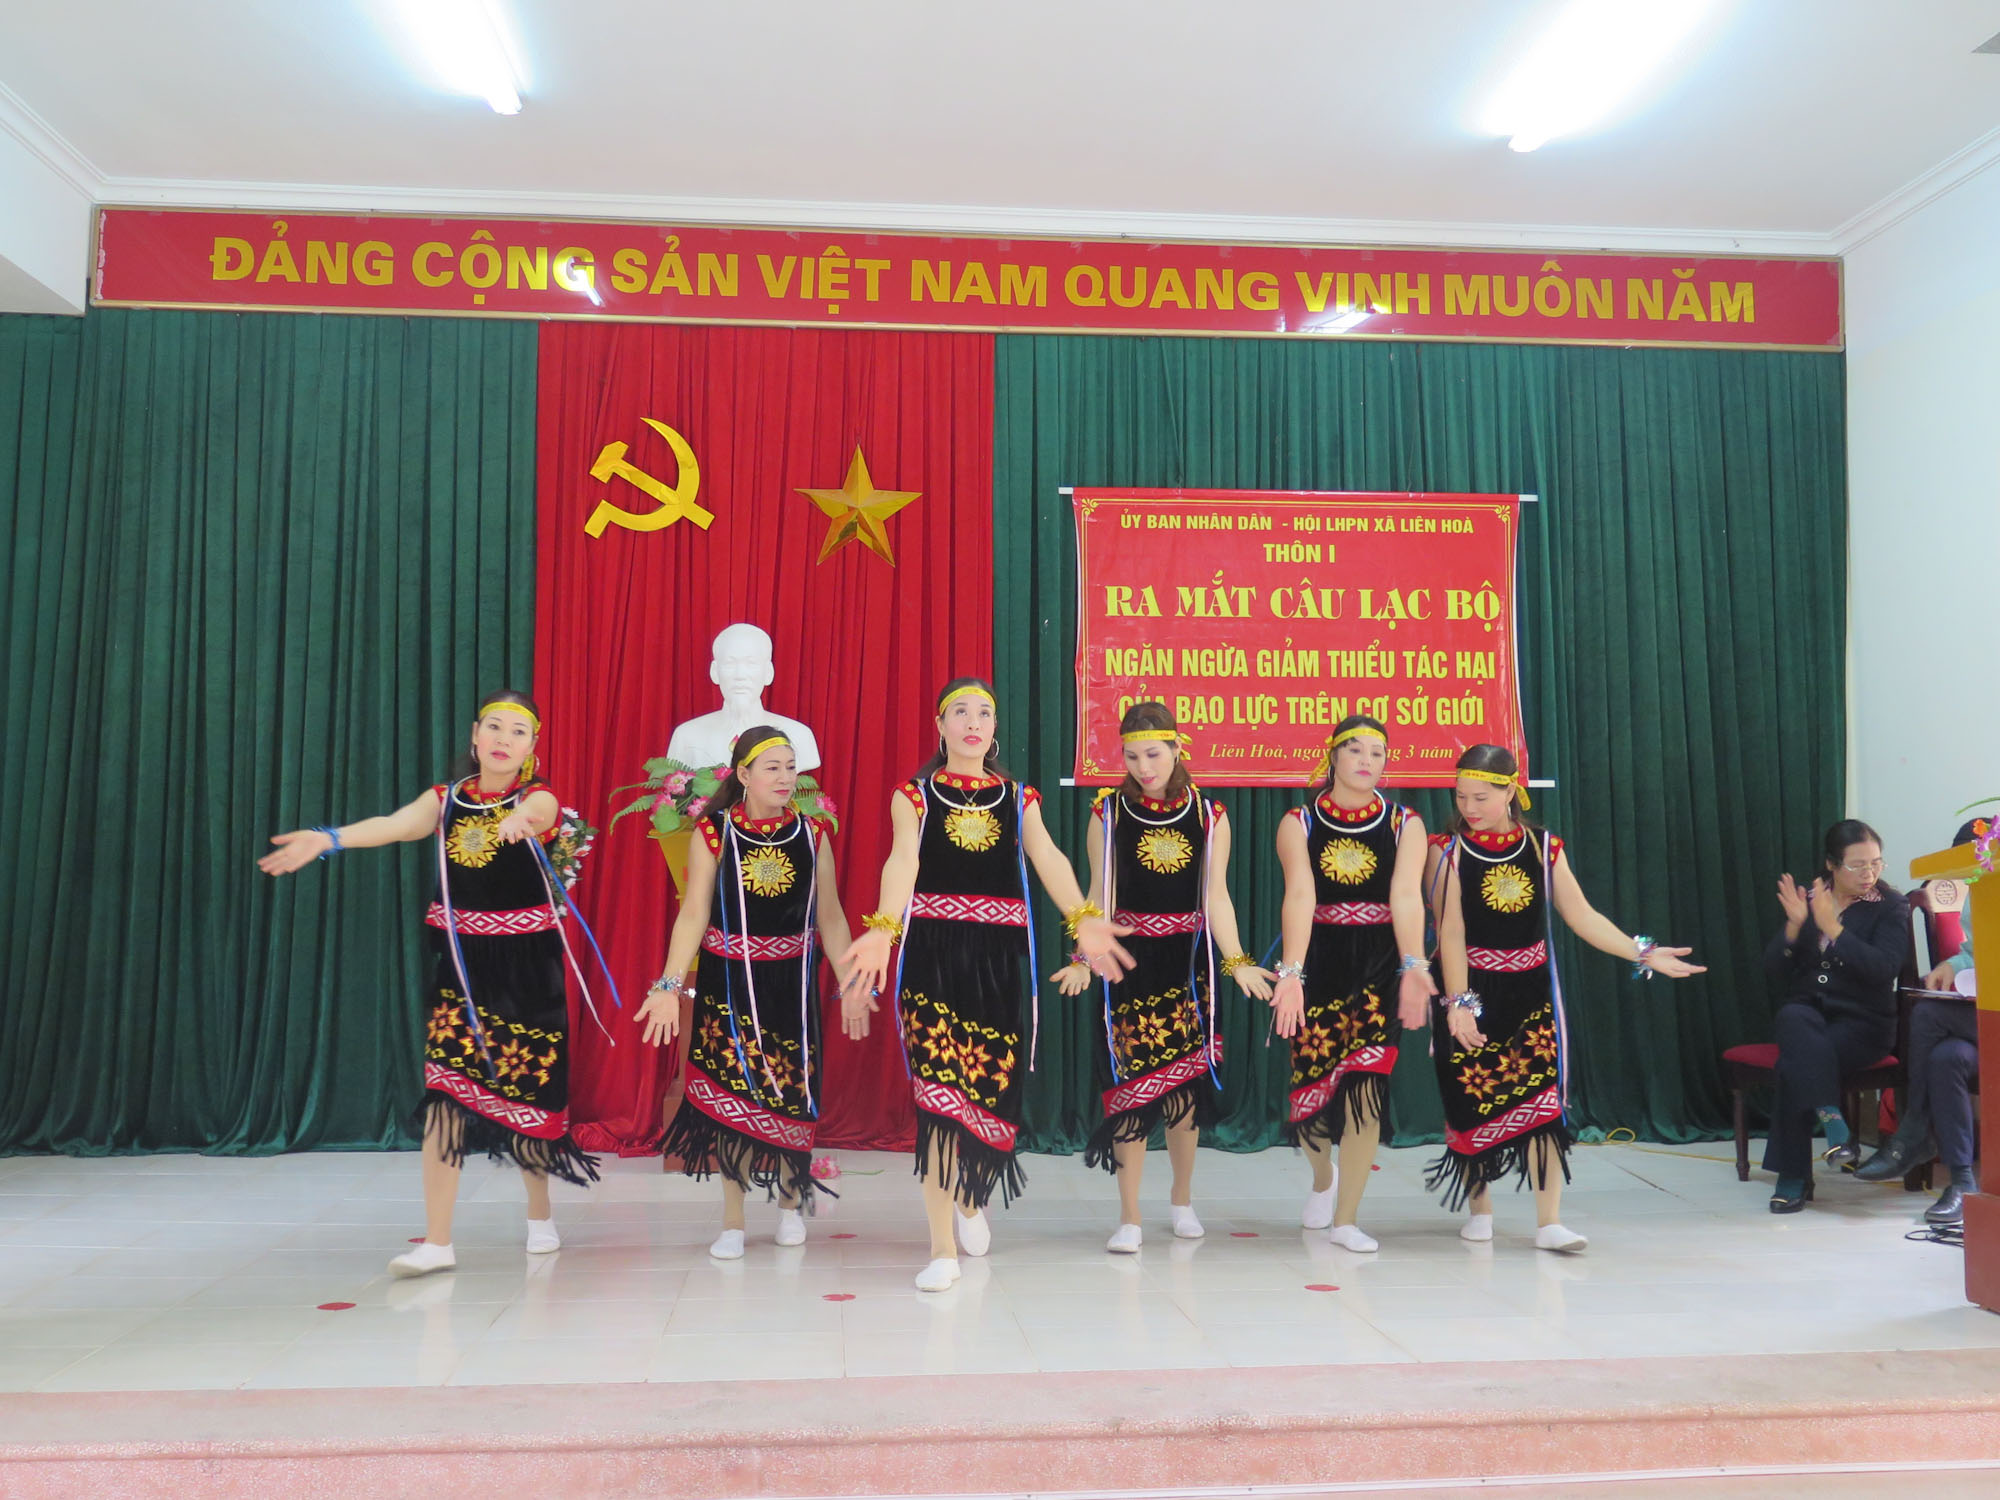 Hội viên Hội Phụ nữ xã Liên Hòa, TX Quảng Yên, biểu diễn văn nghệ trong lễ ra mắt CLB  Ngăn ngừa giảm thiểu tác động của bạo lực trên cơ sở giới. Ảnh do Hội LHPN xã Liên Hòa cung cấp